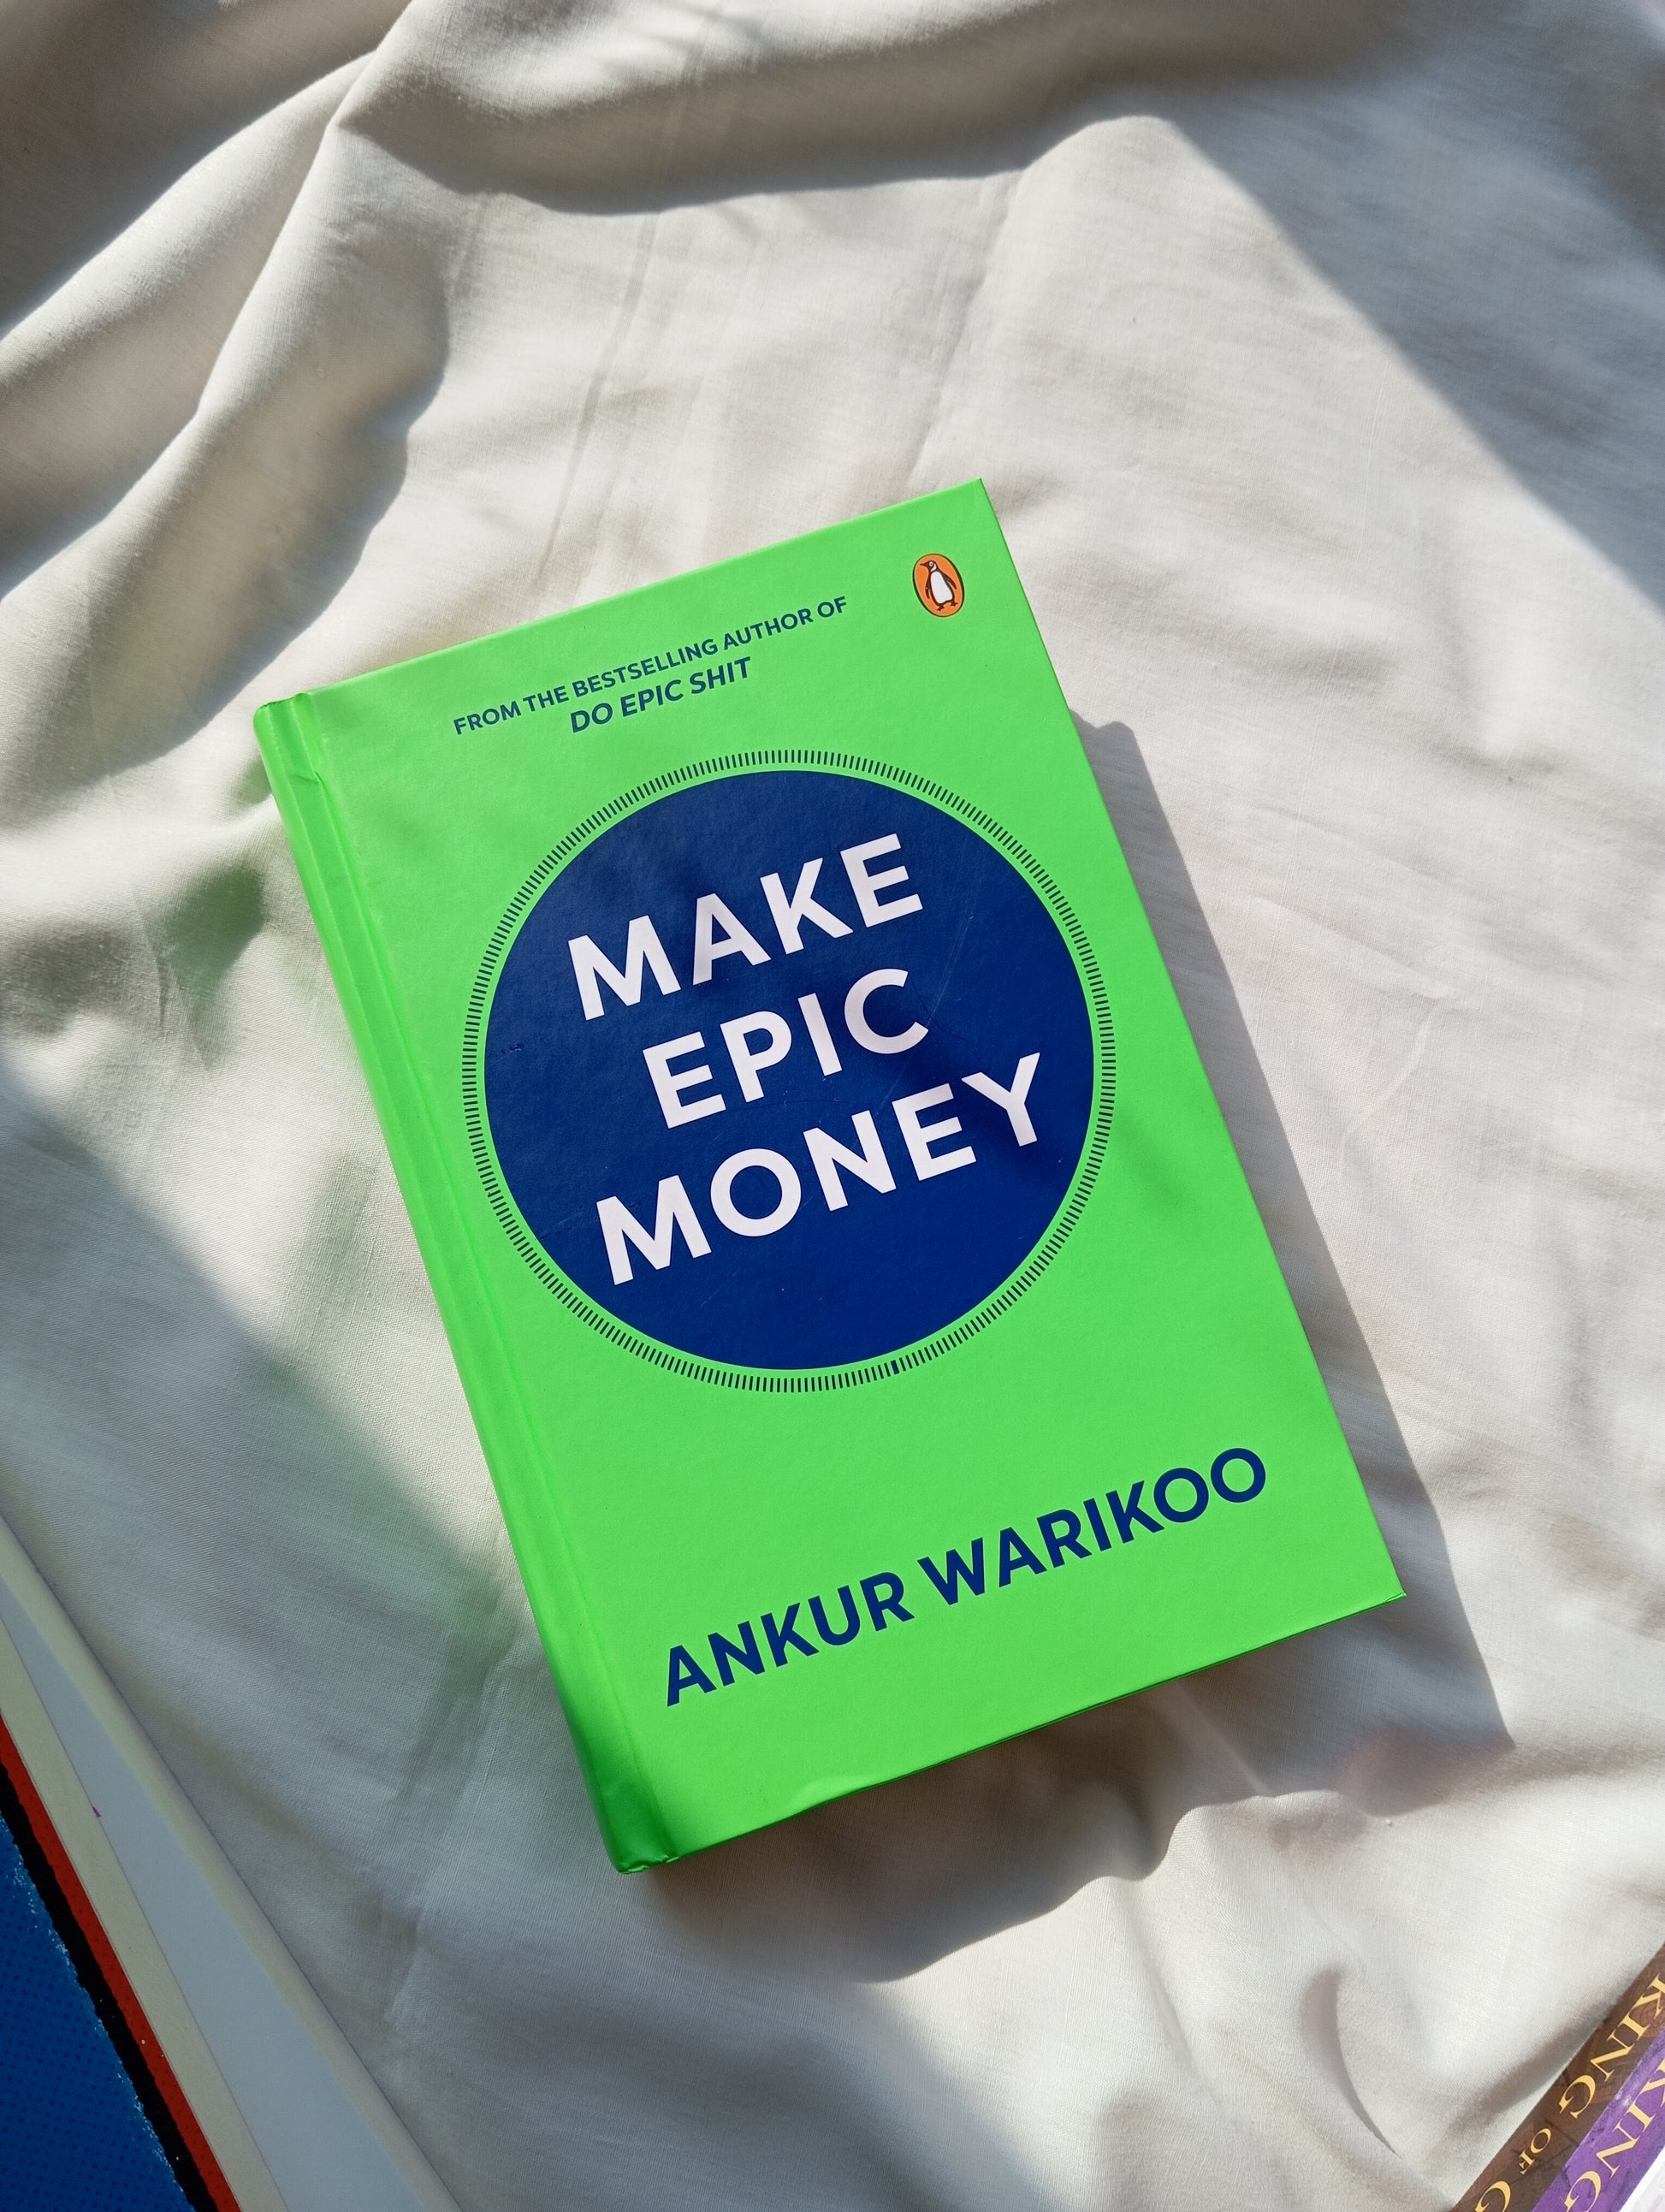 Make Epic Money by Ankur Warikoo at BIBLIONEPAL Bookstore